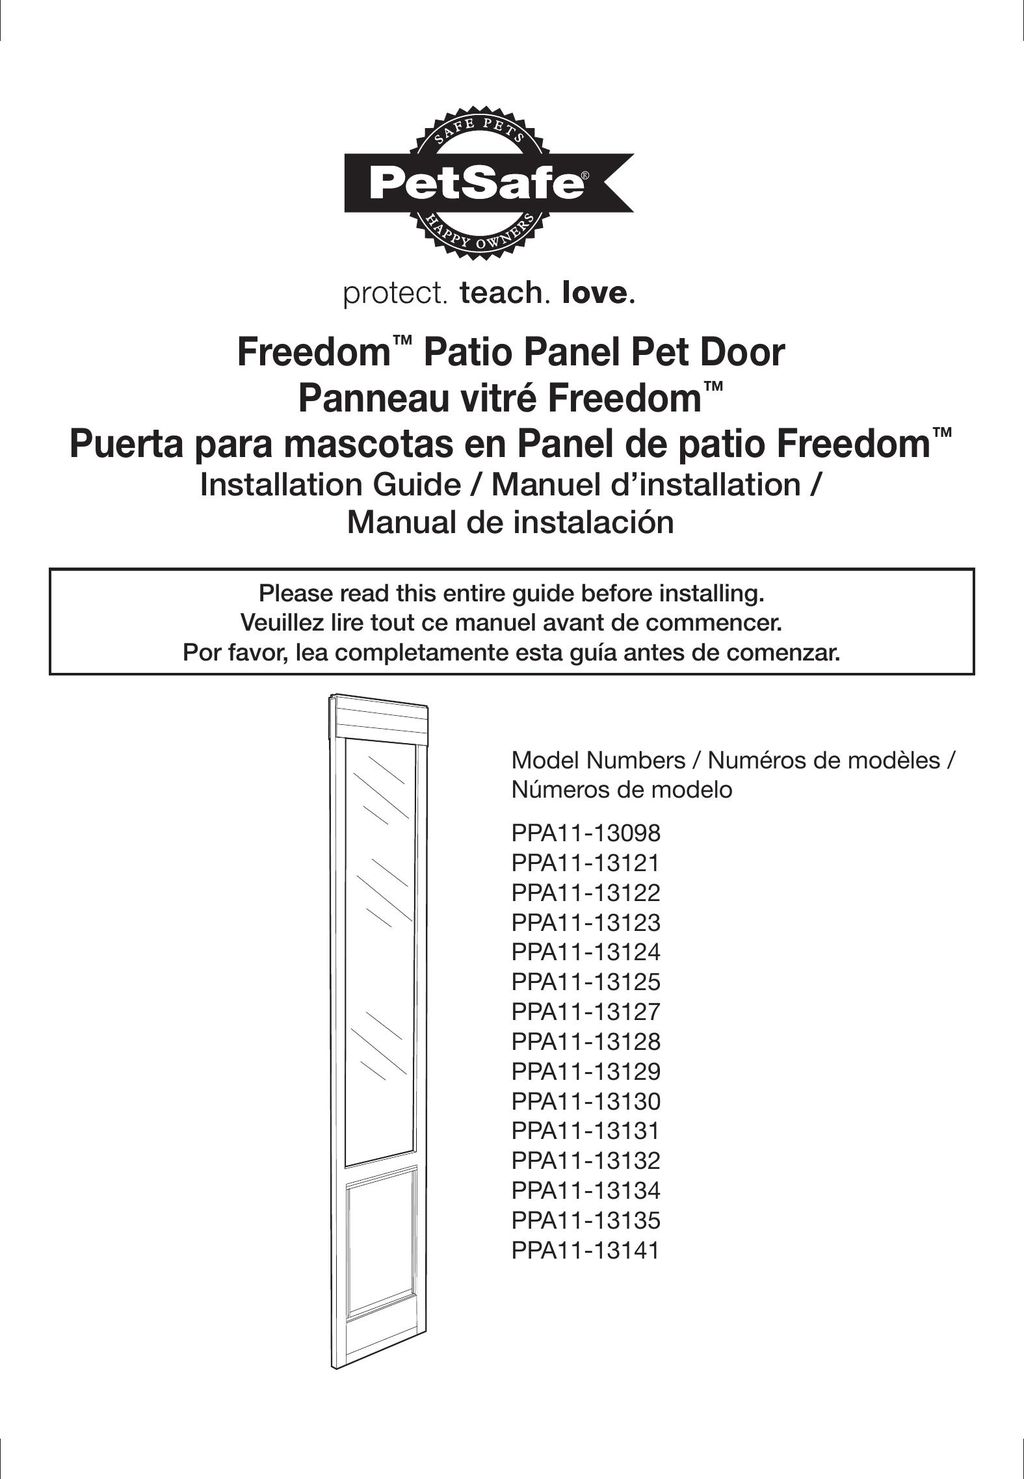 Petsafe PPA11-13130 Door User Manual